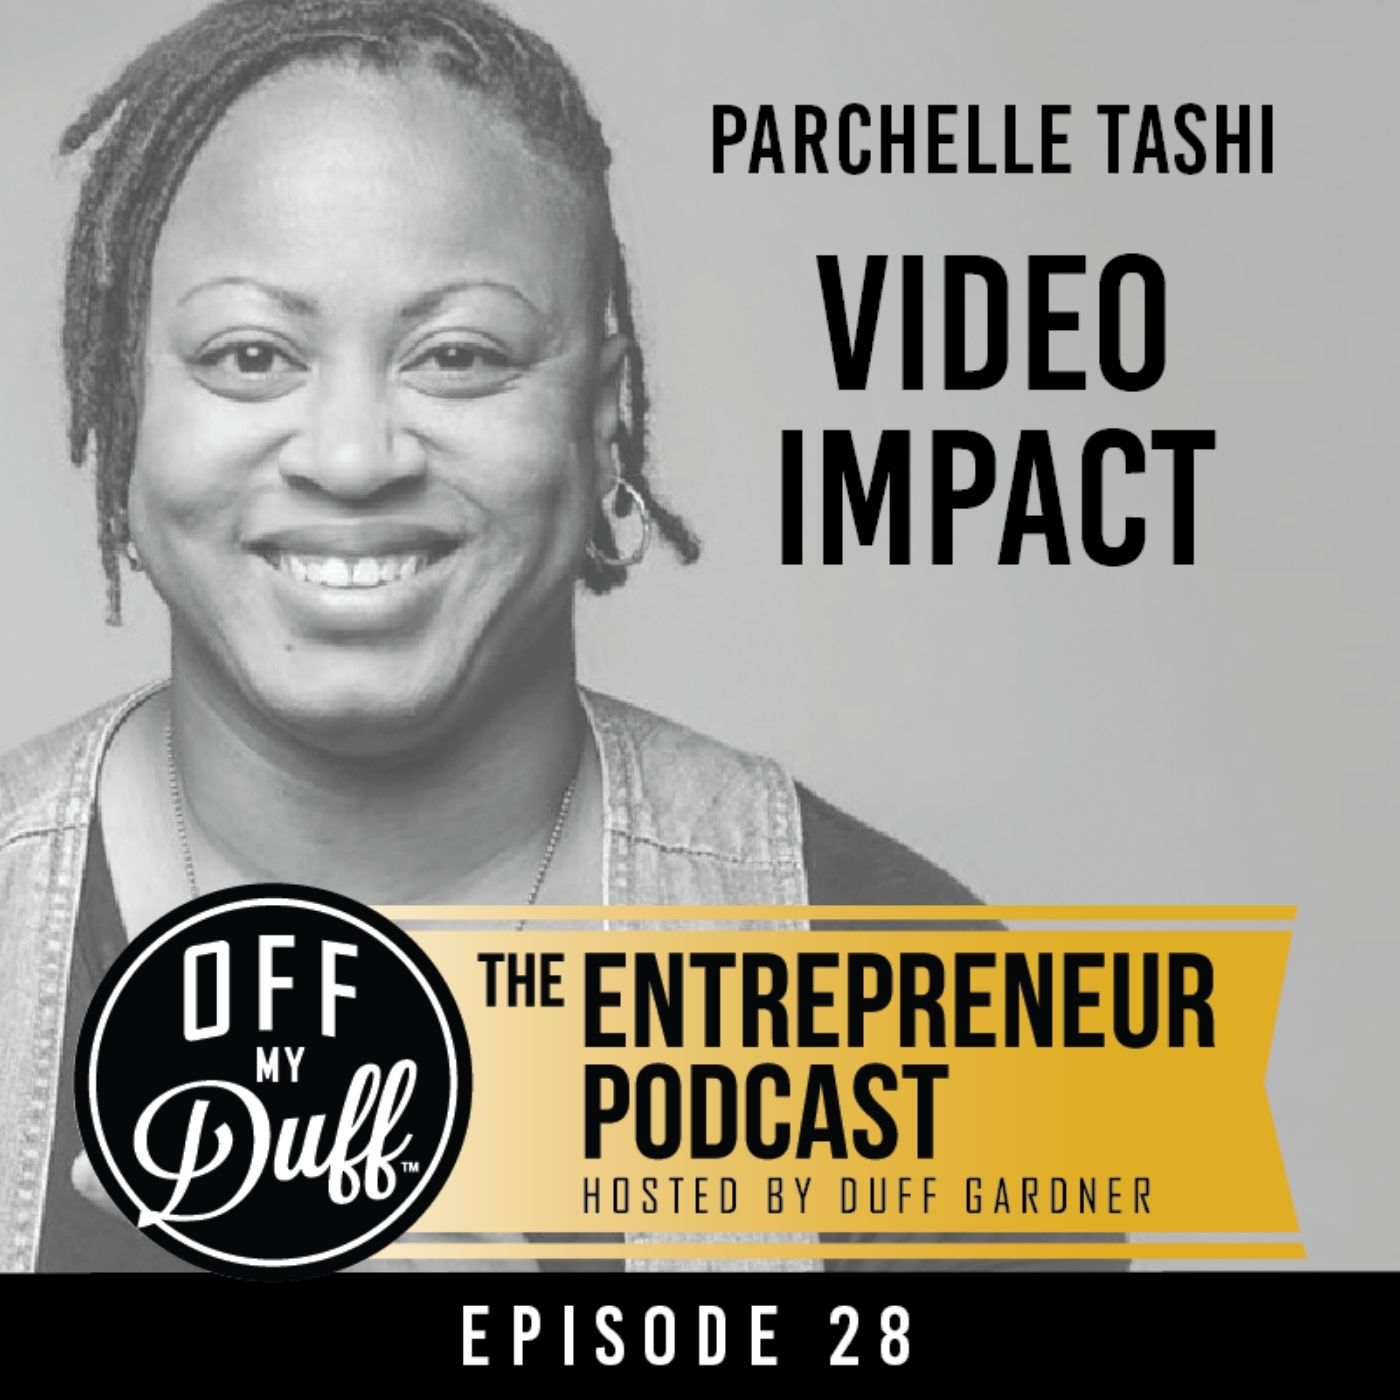 Parchelle Tashi - Video Impact